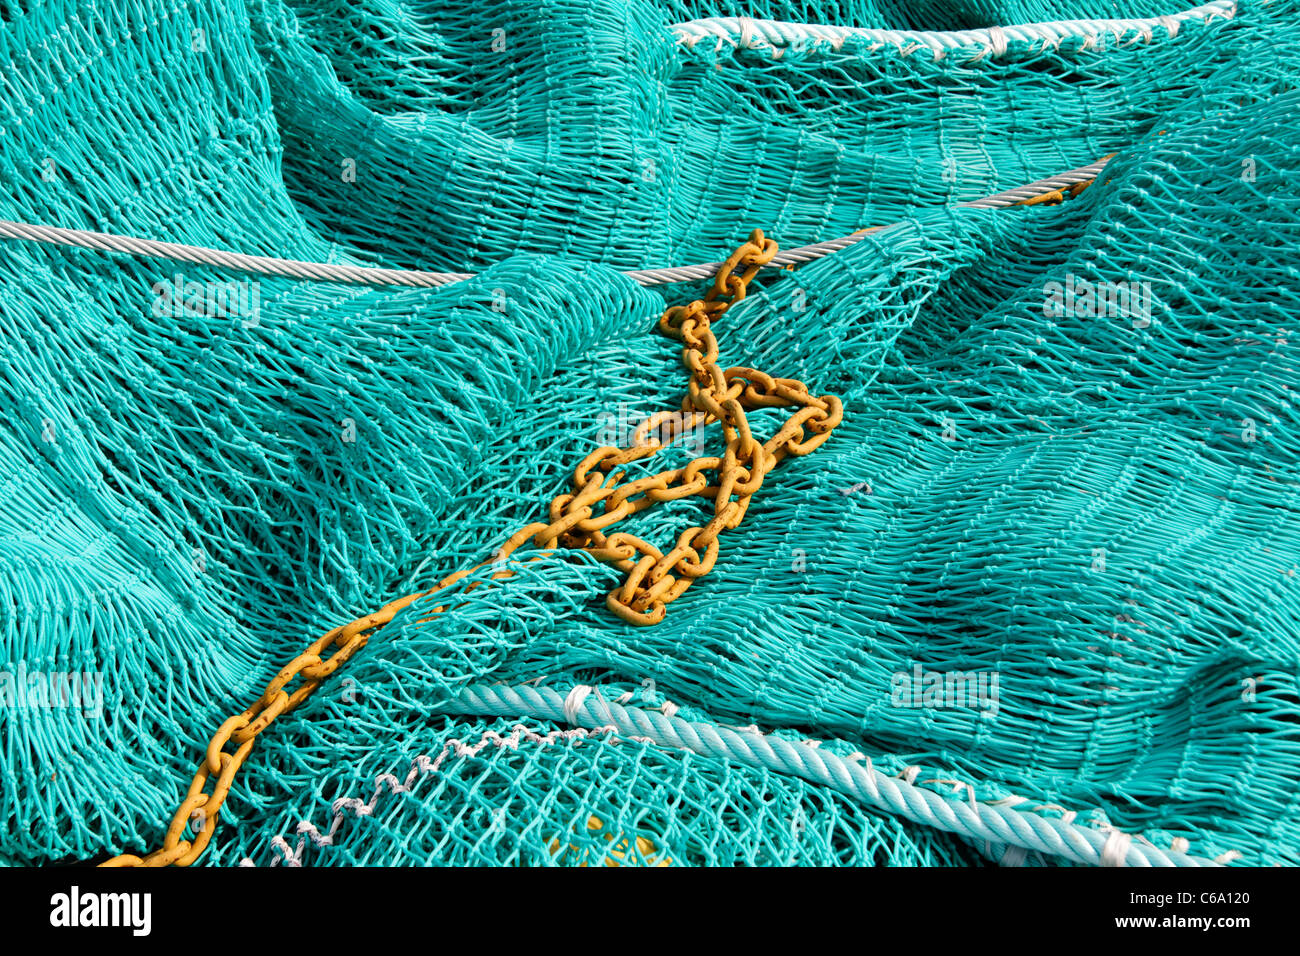 Red de pesca de arrastre, (Normandía, Francia). Foto de stock